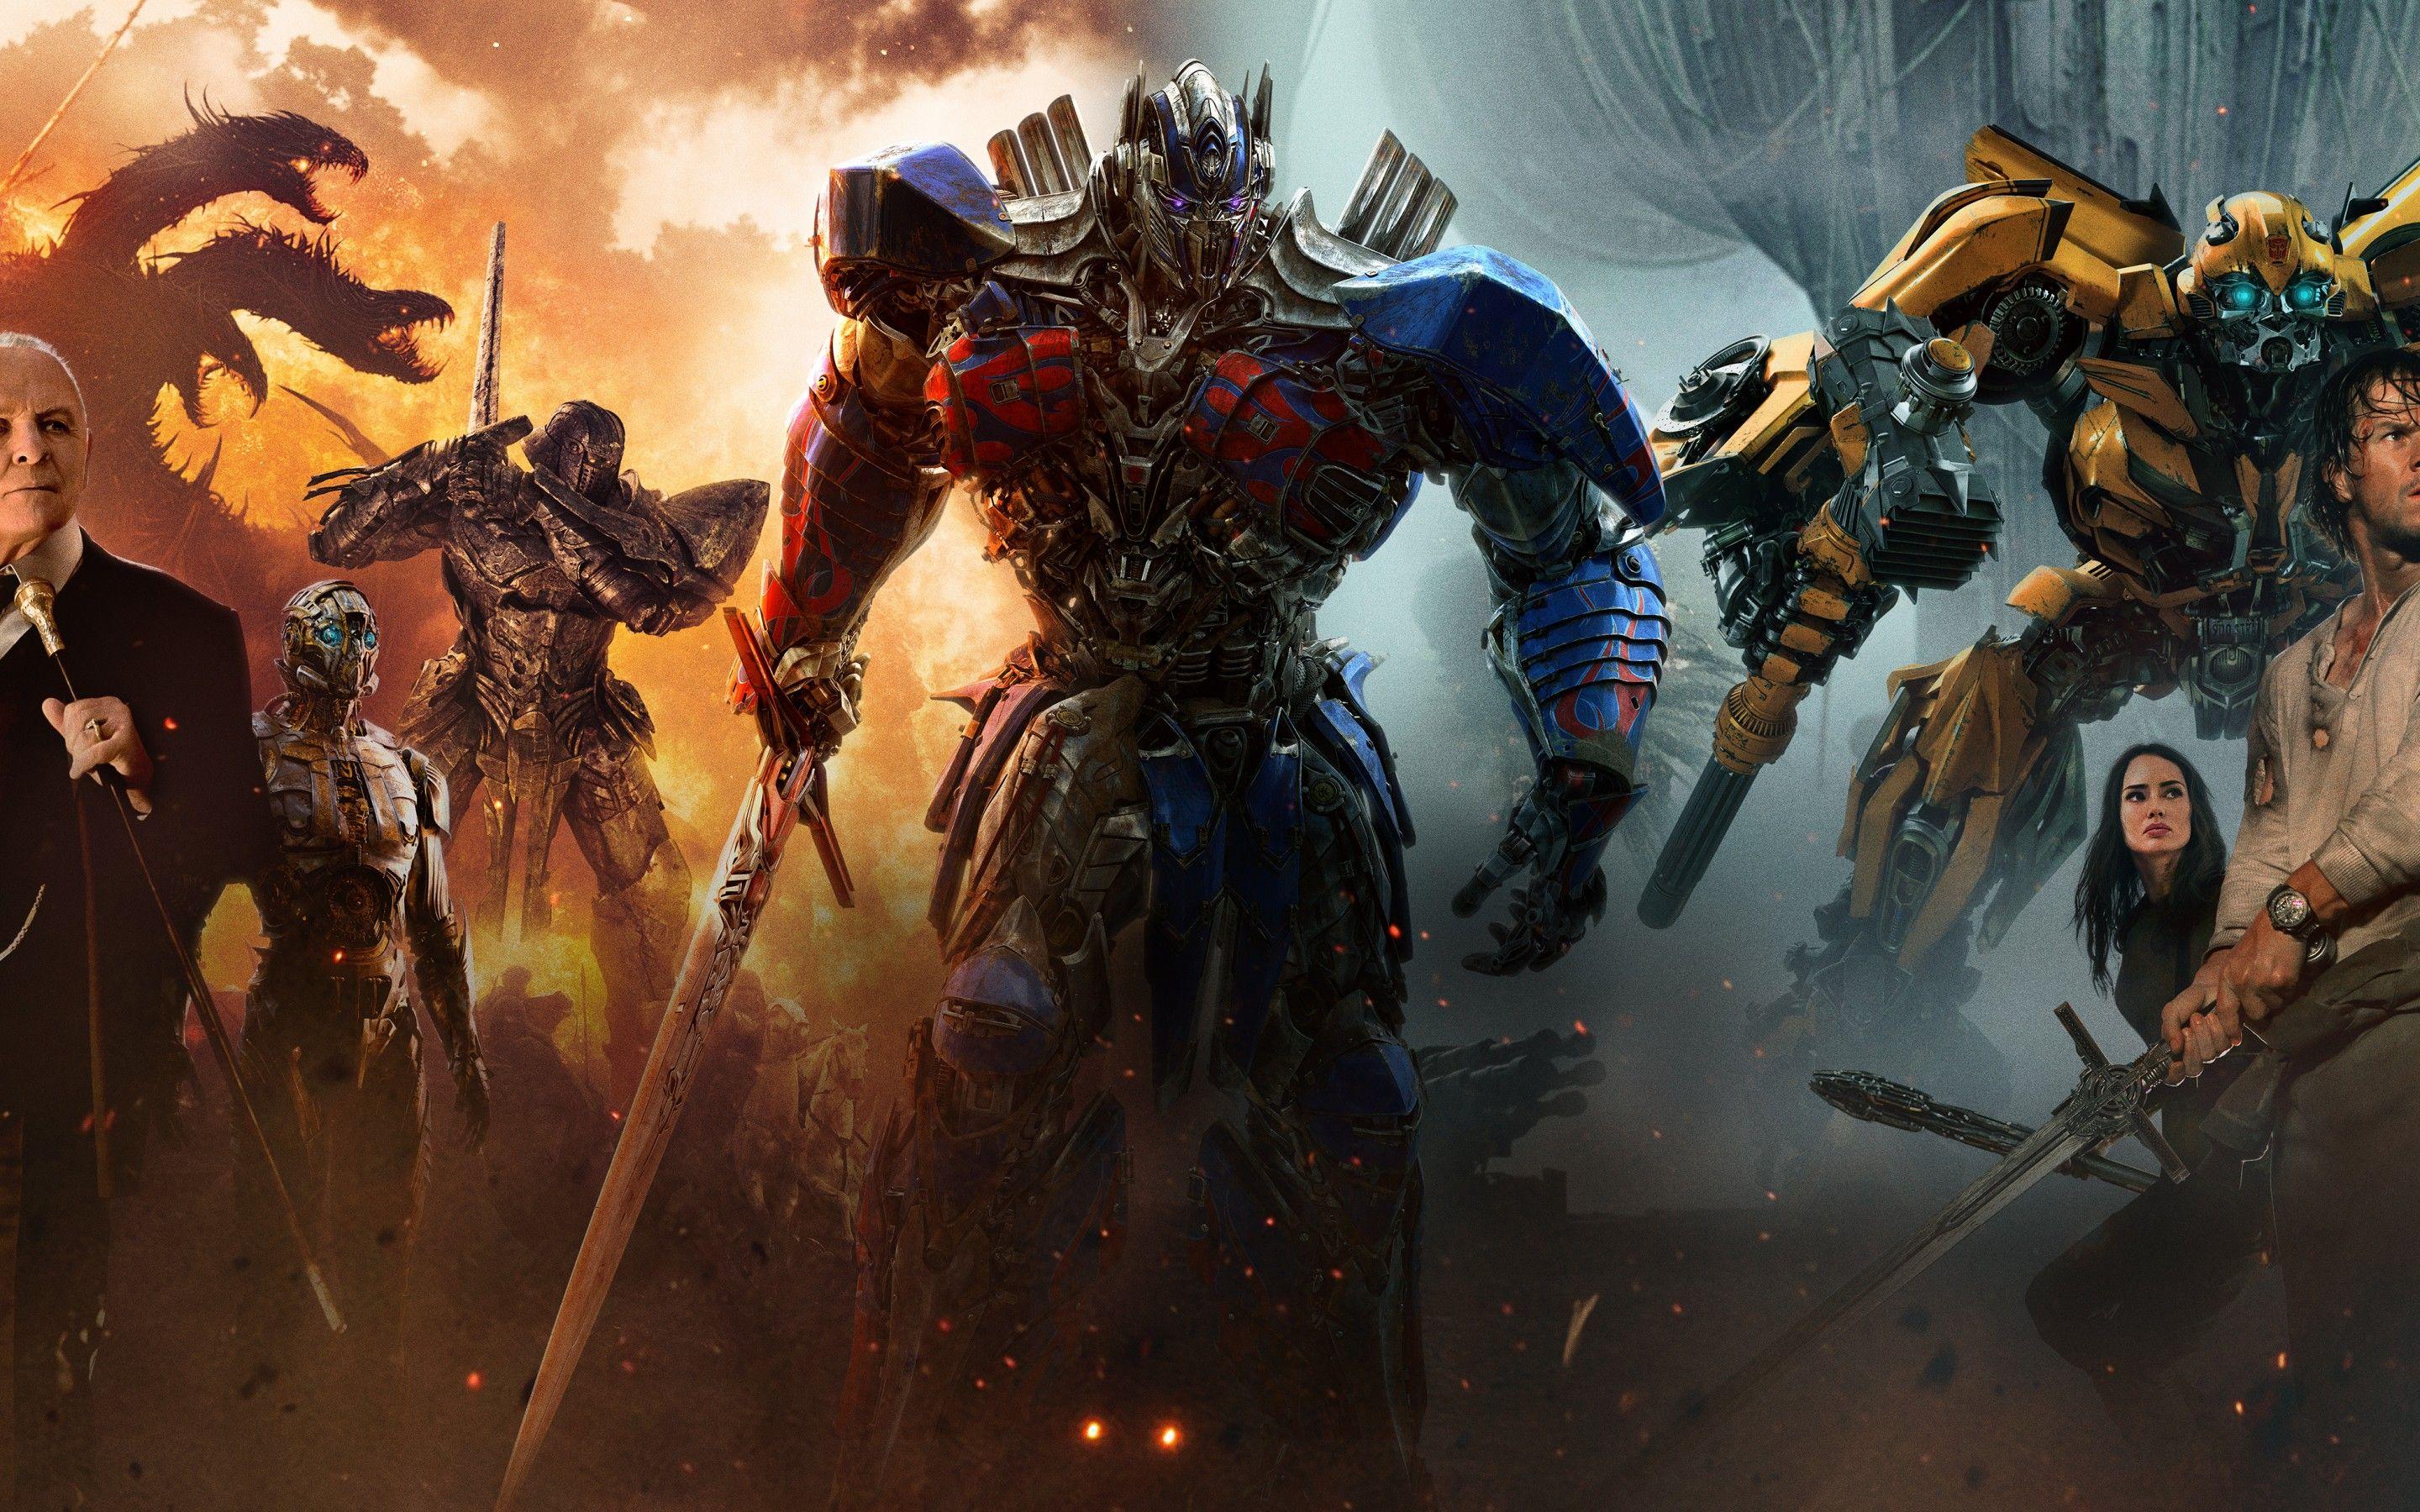 Wallpaper Transformers: The Last Knight, HD, 4K, Movies